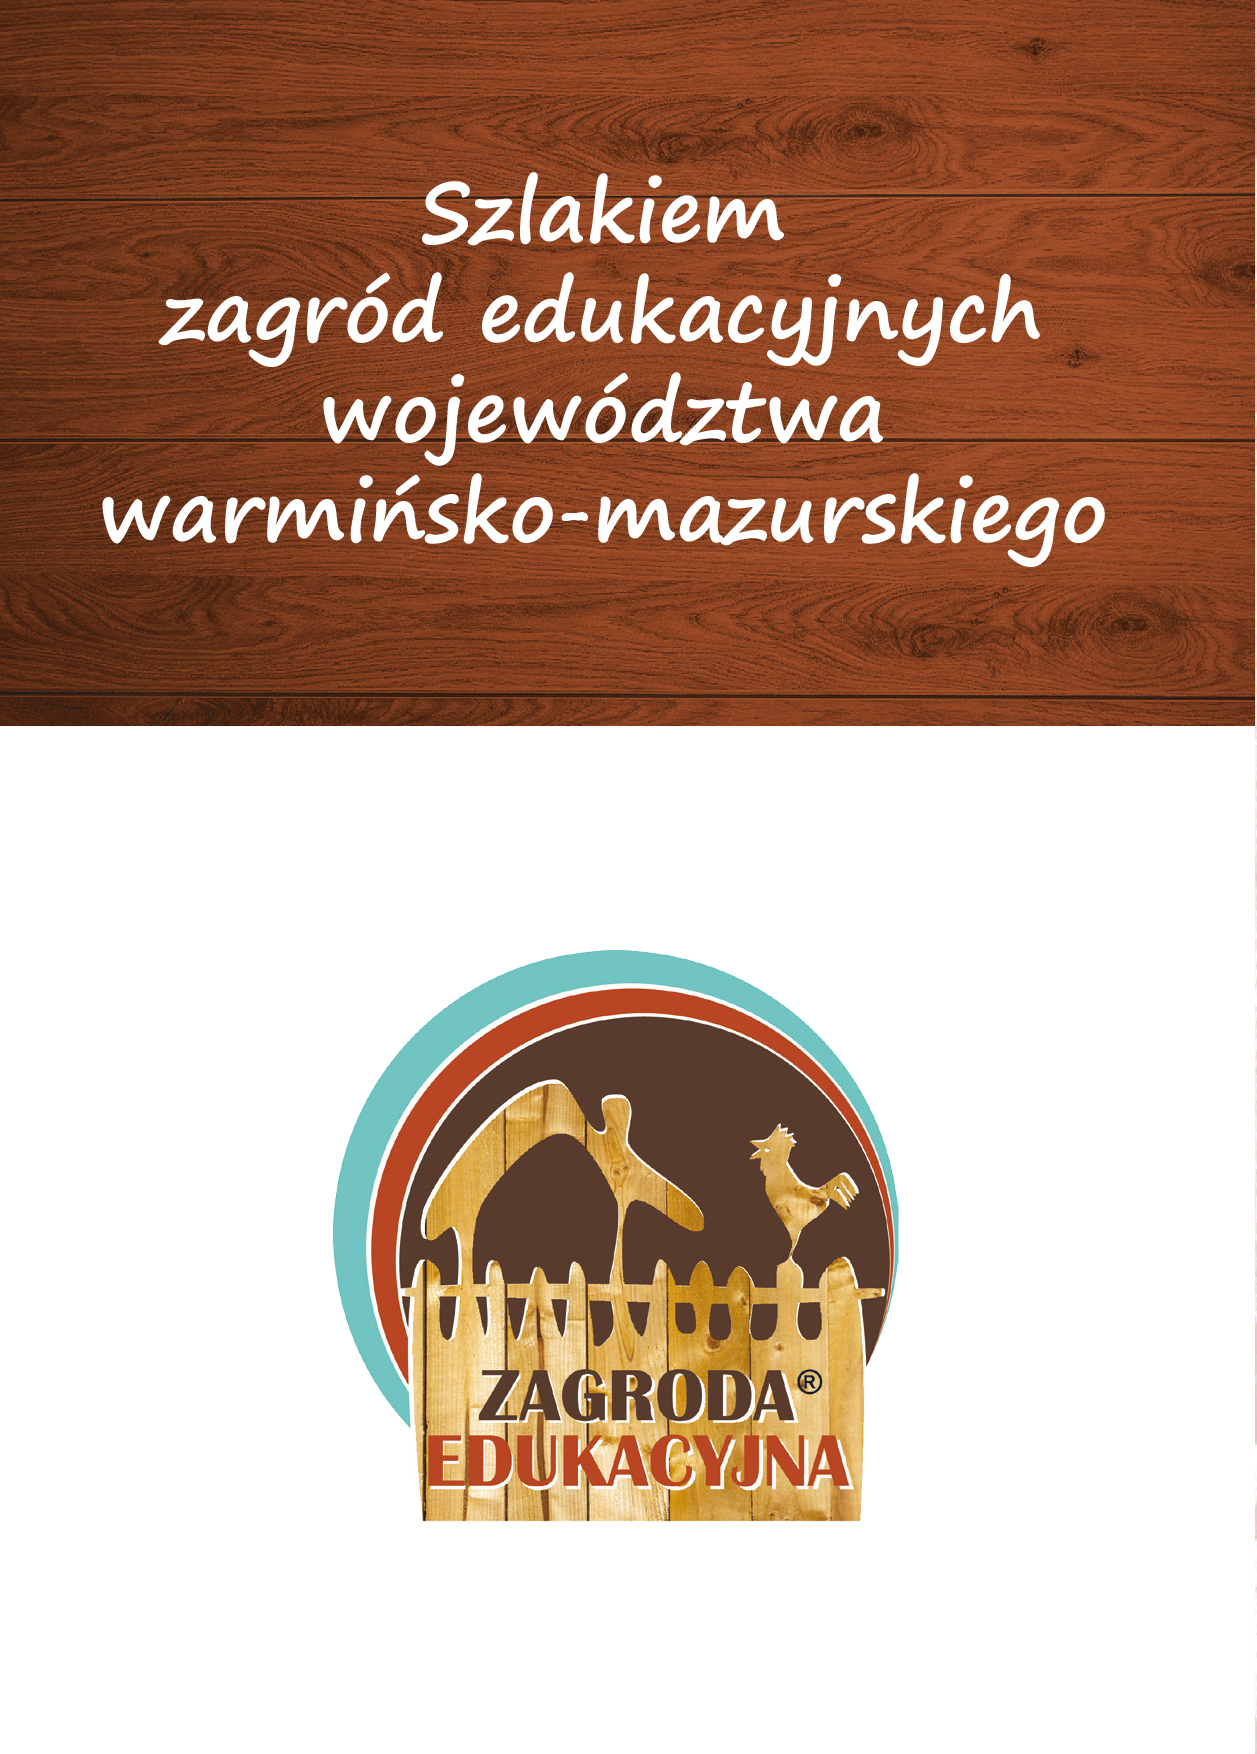 Szlakiem zagród edukacyjnych województwa warmińsko-mazurskiego